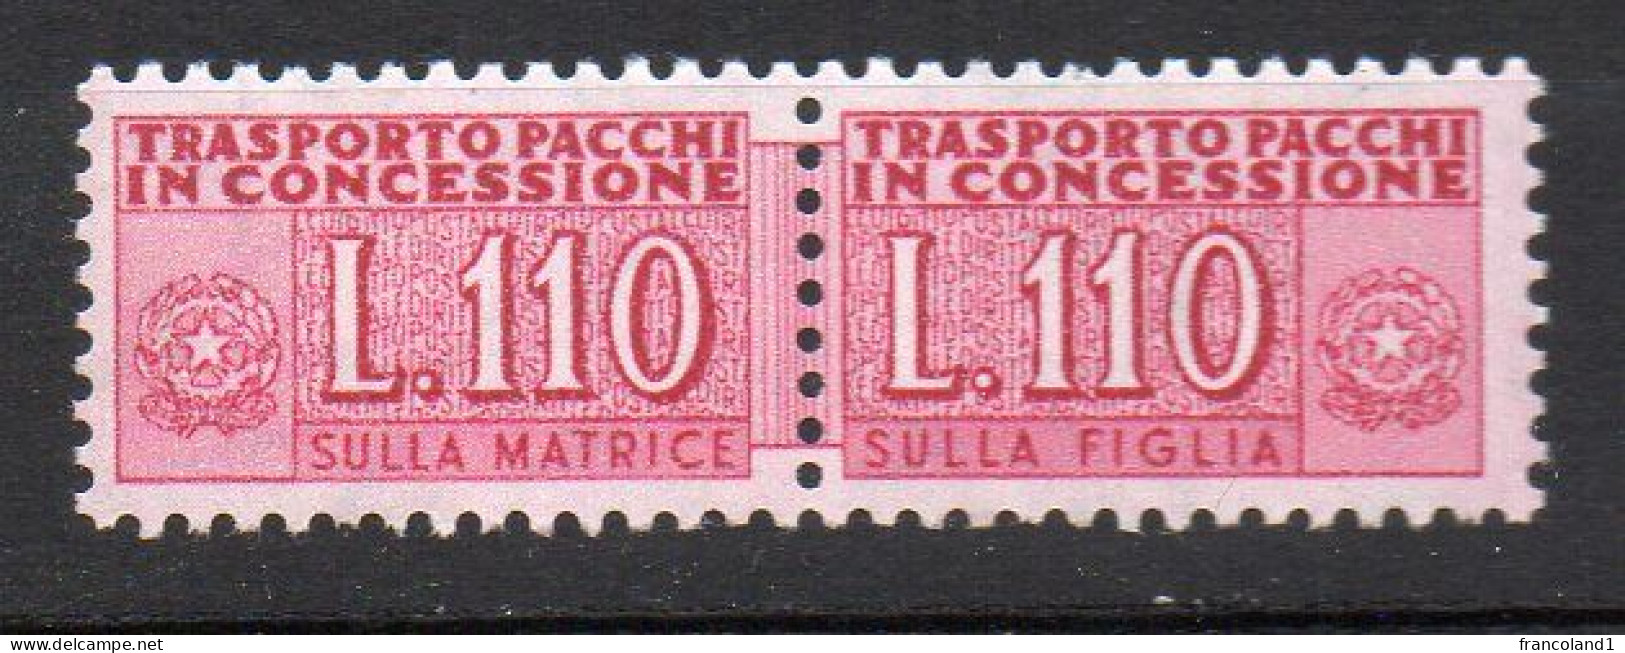 1955 - 81 Repubblica Italiana Pacco In Concessione N. 12 - 110 Lire Integro MNH** Firmato Diena - Colis-concession